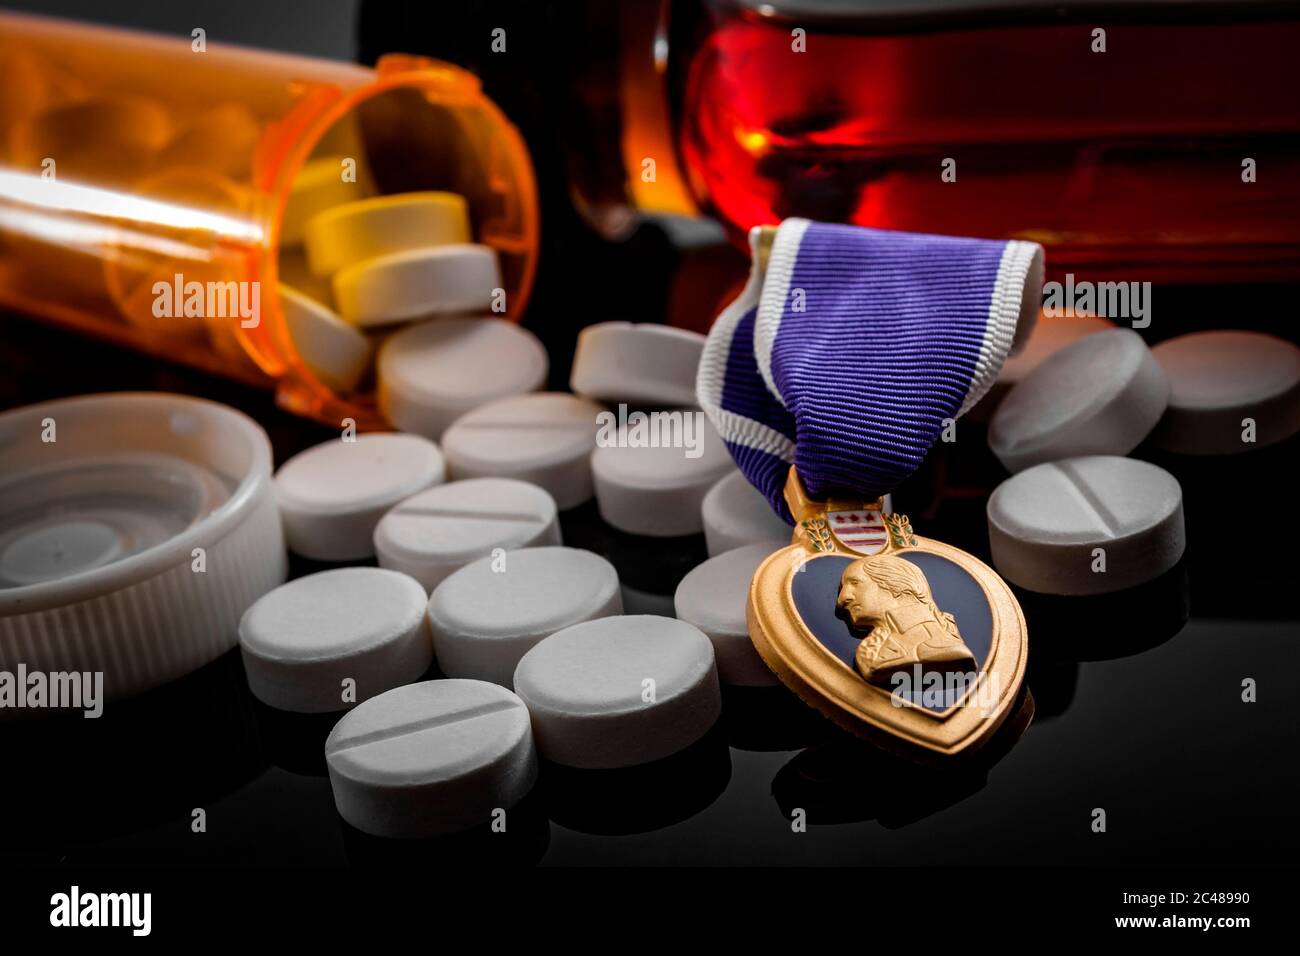 Pastillas de prescripción, una botella de alcohol y una medalla de corazón púrpura, que ilustra la realidad de muchos veteranos que luchan con PTSD y reincorporación social Foto de stock